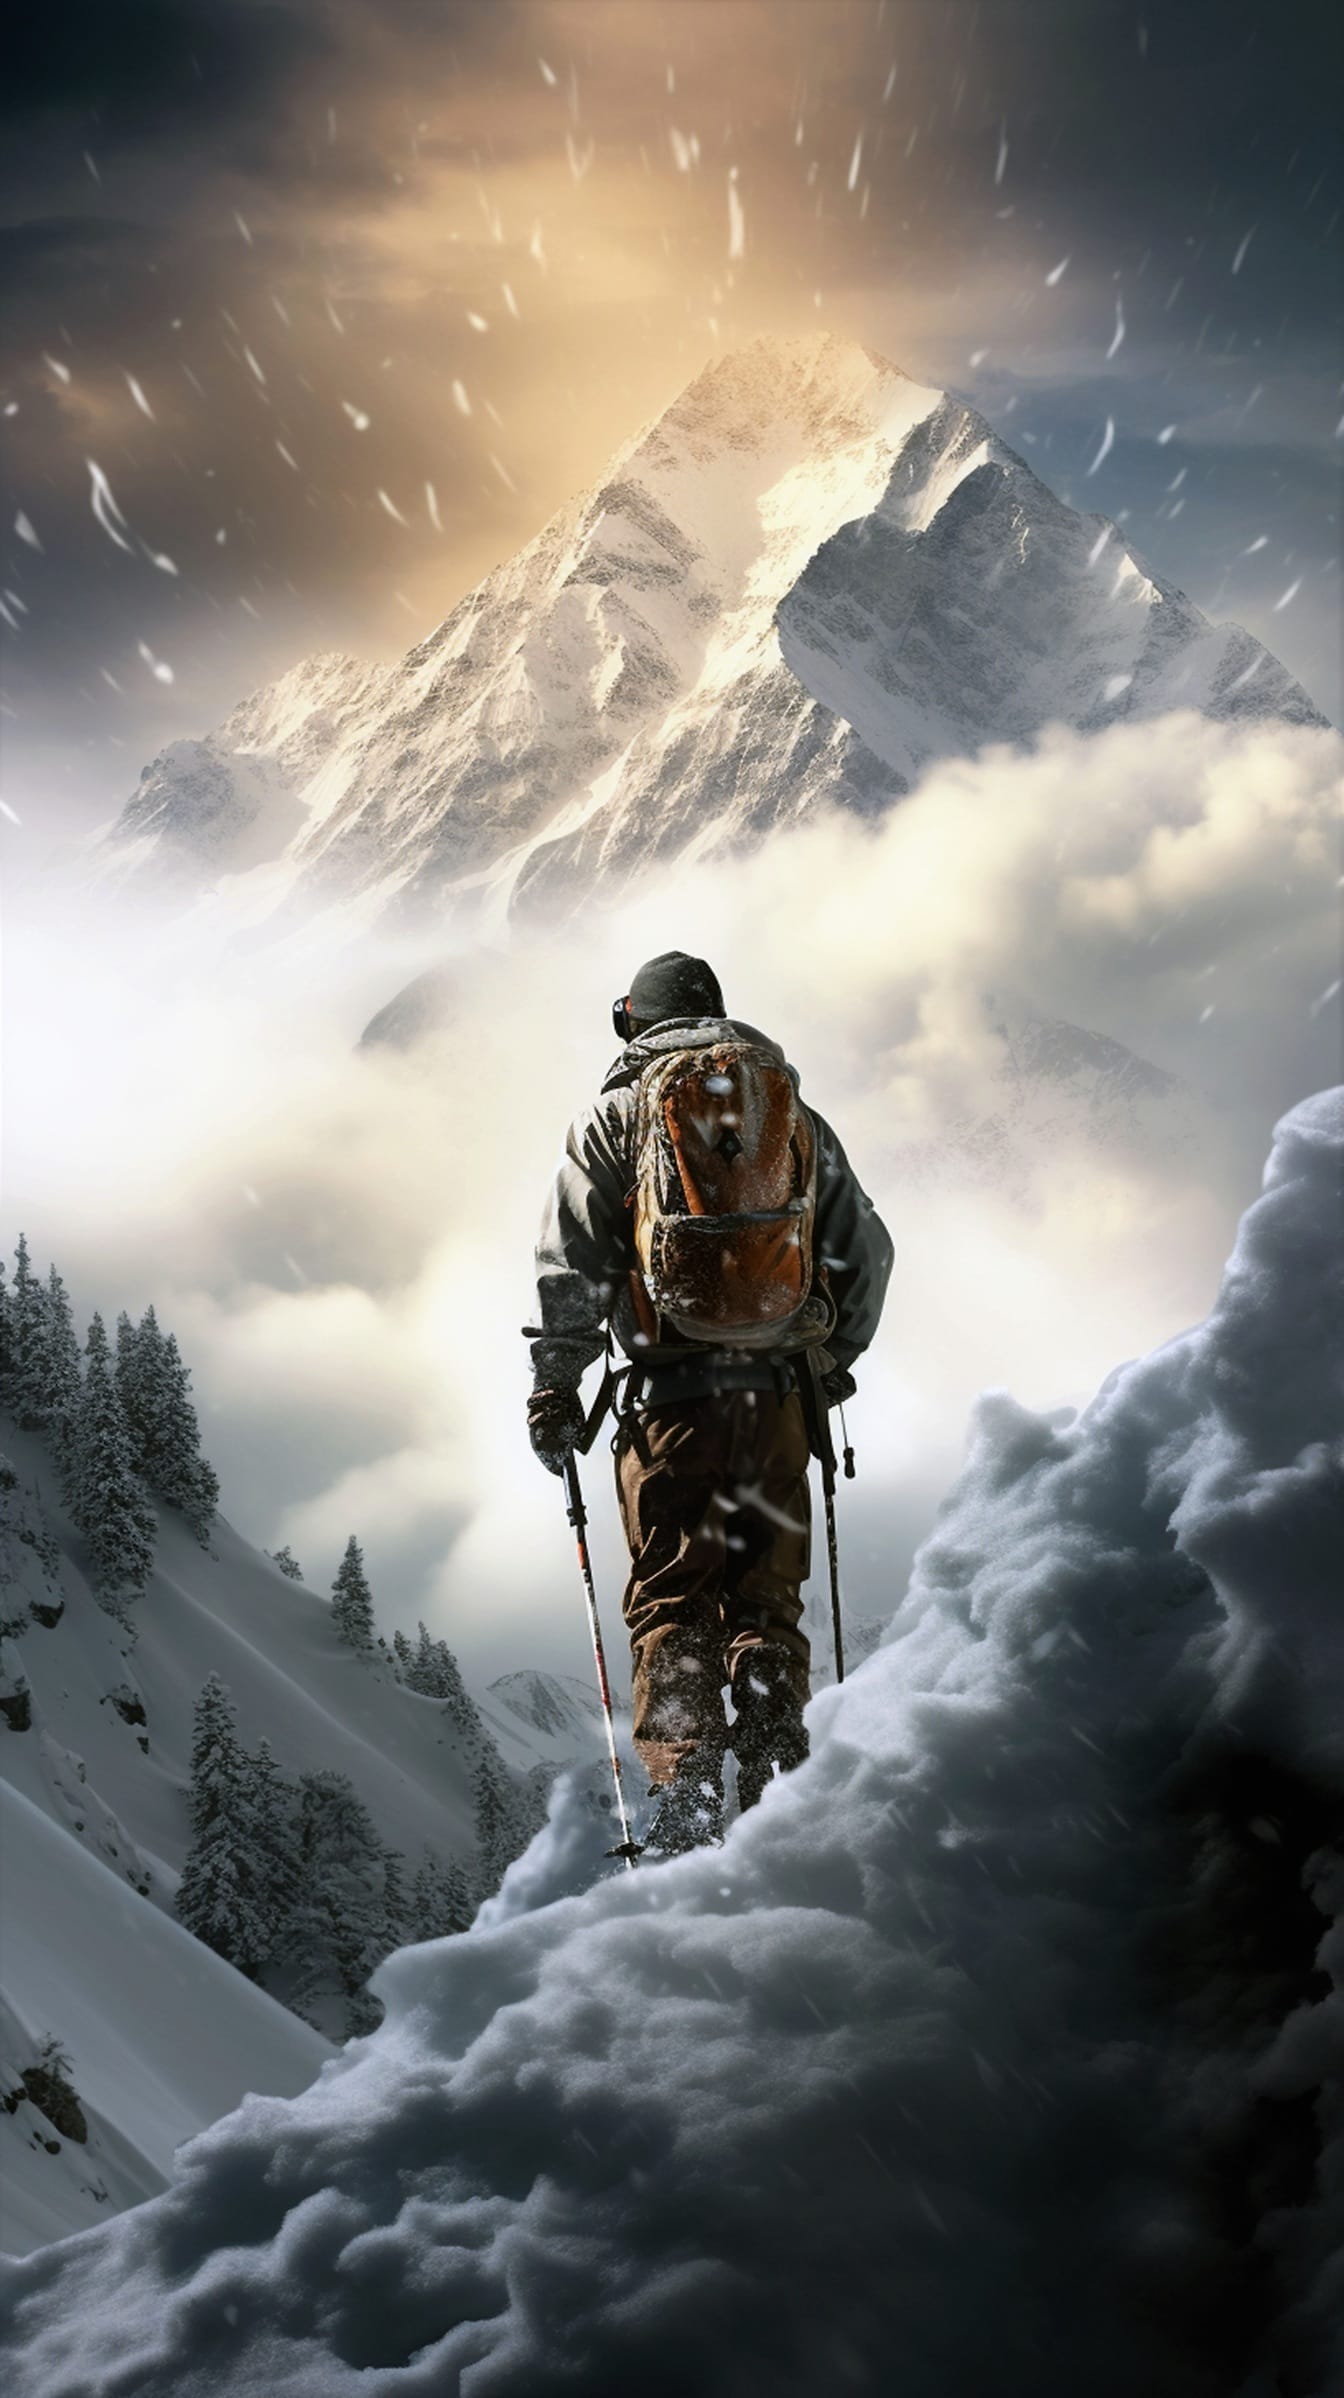 Backpacker horolezec v extrémním zasněženém počasí